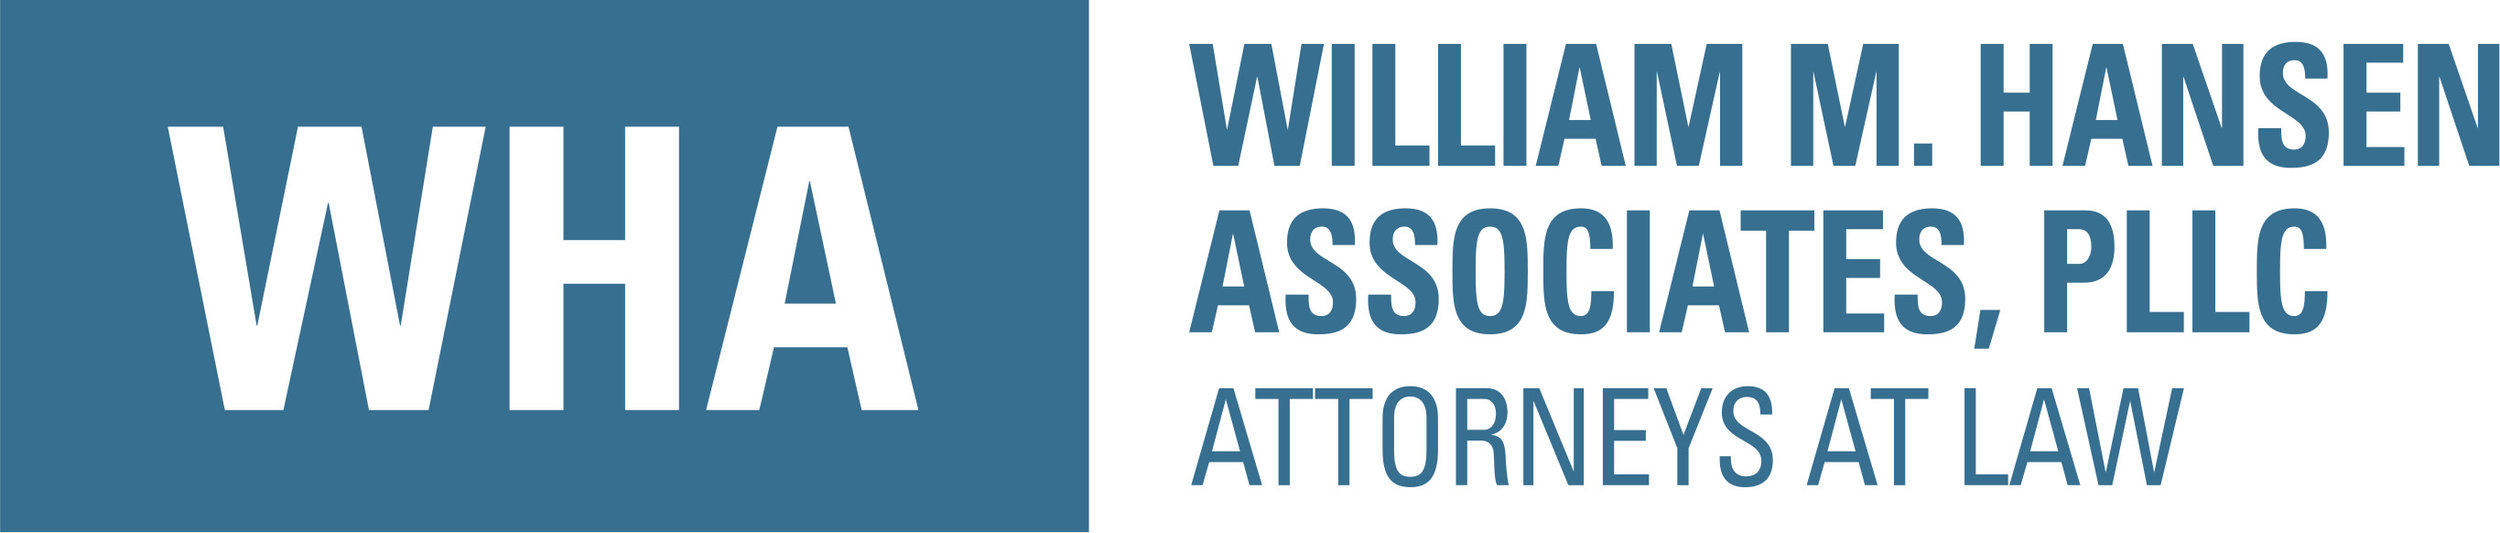 William M. Hansen Associates, PLLC